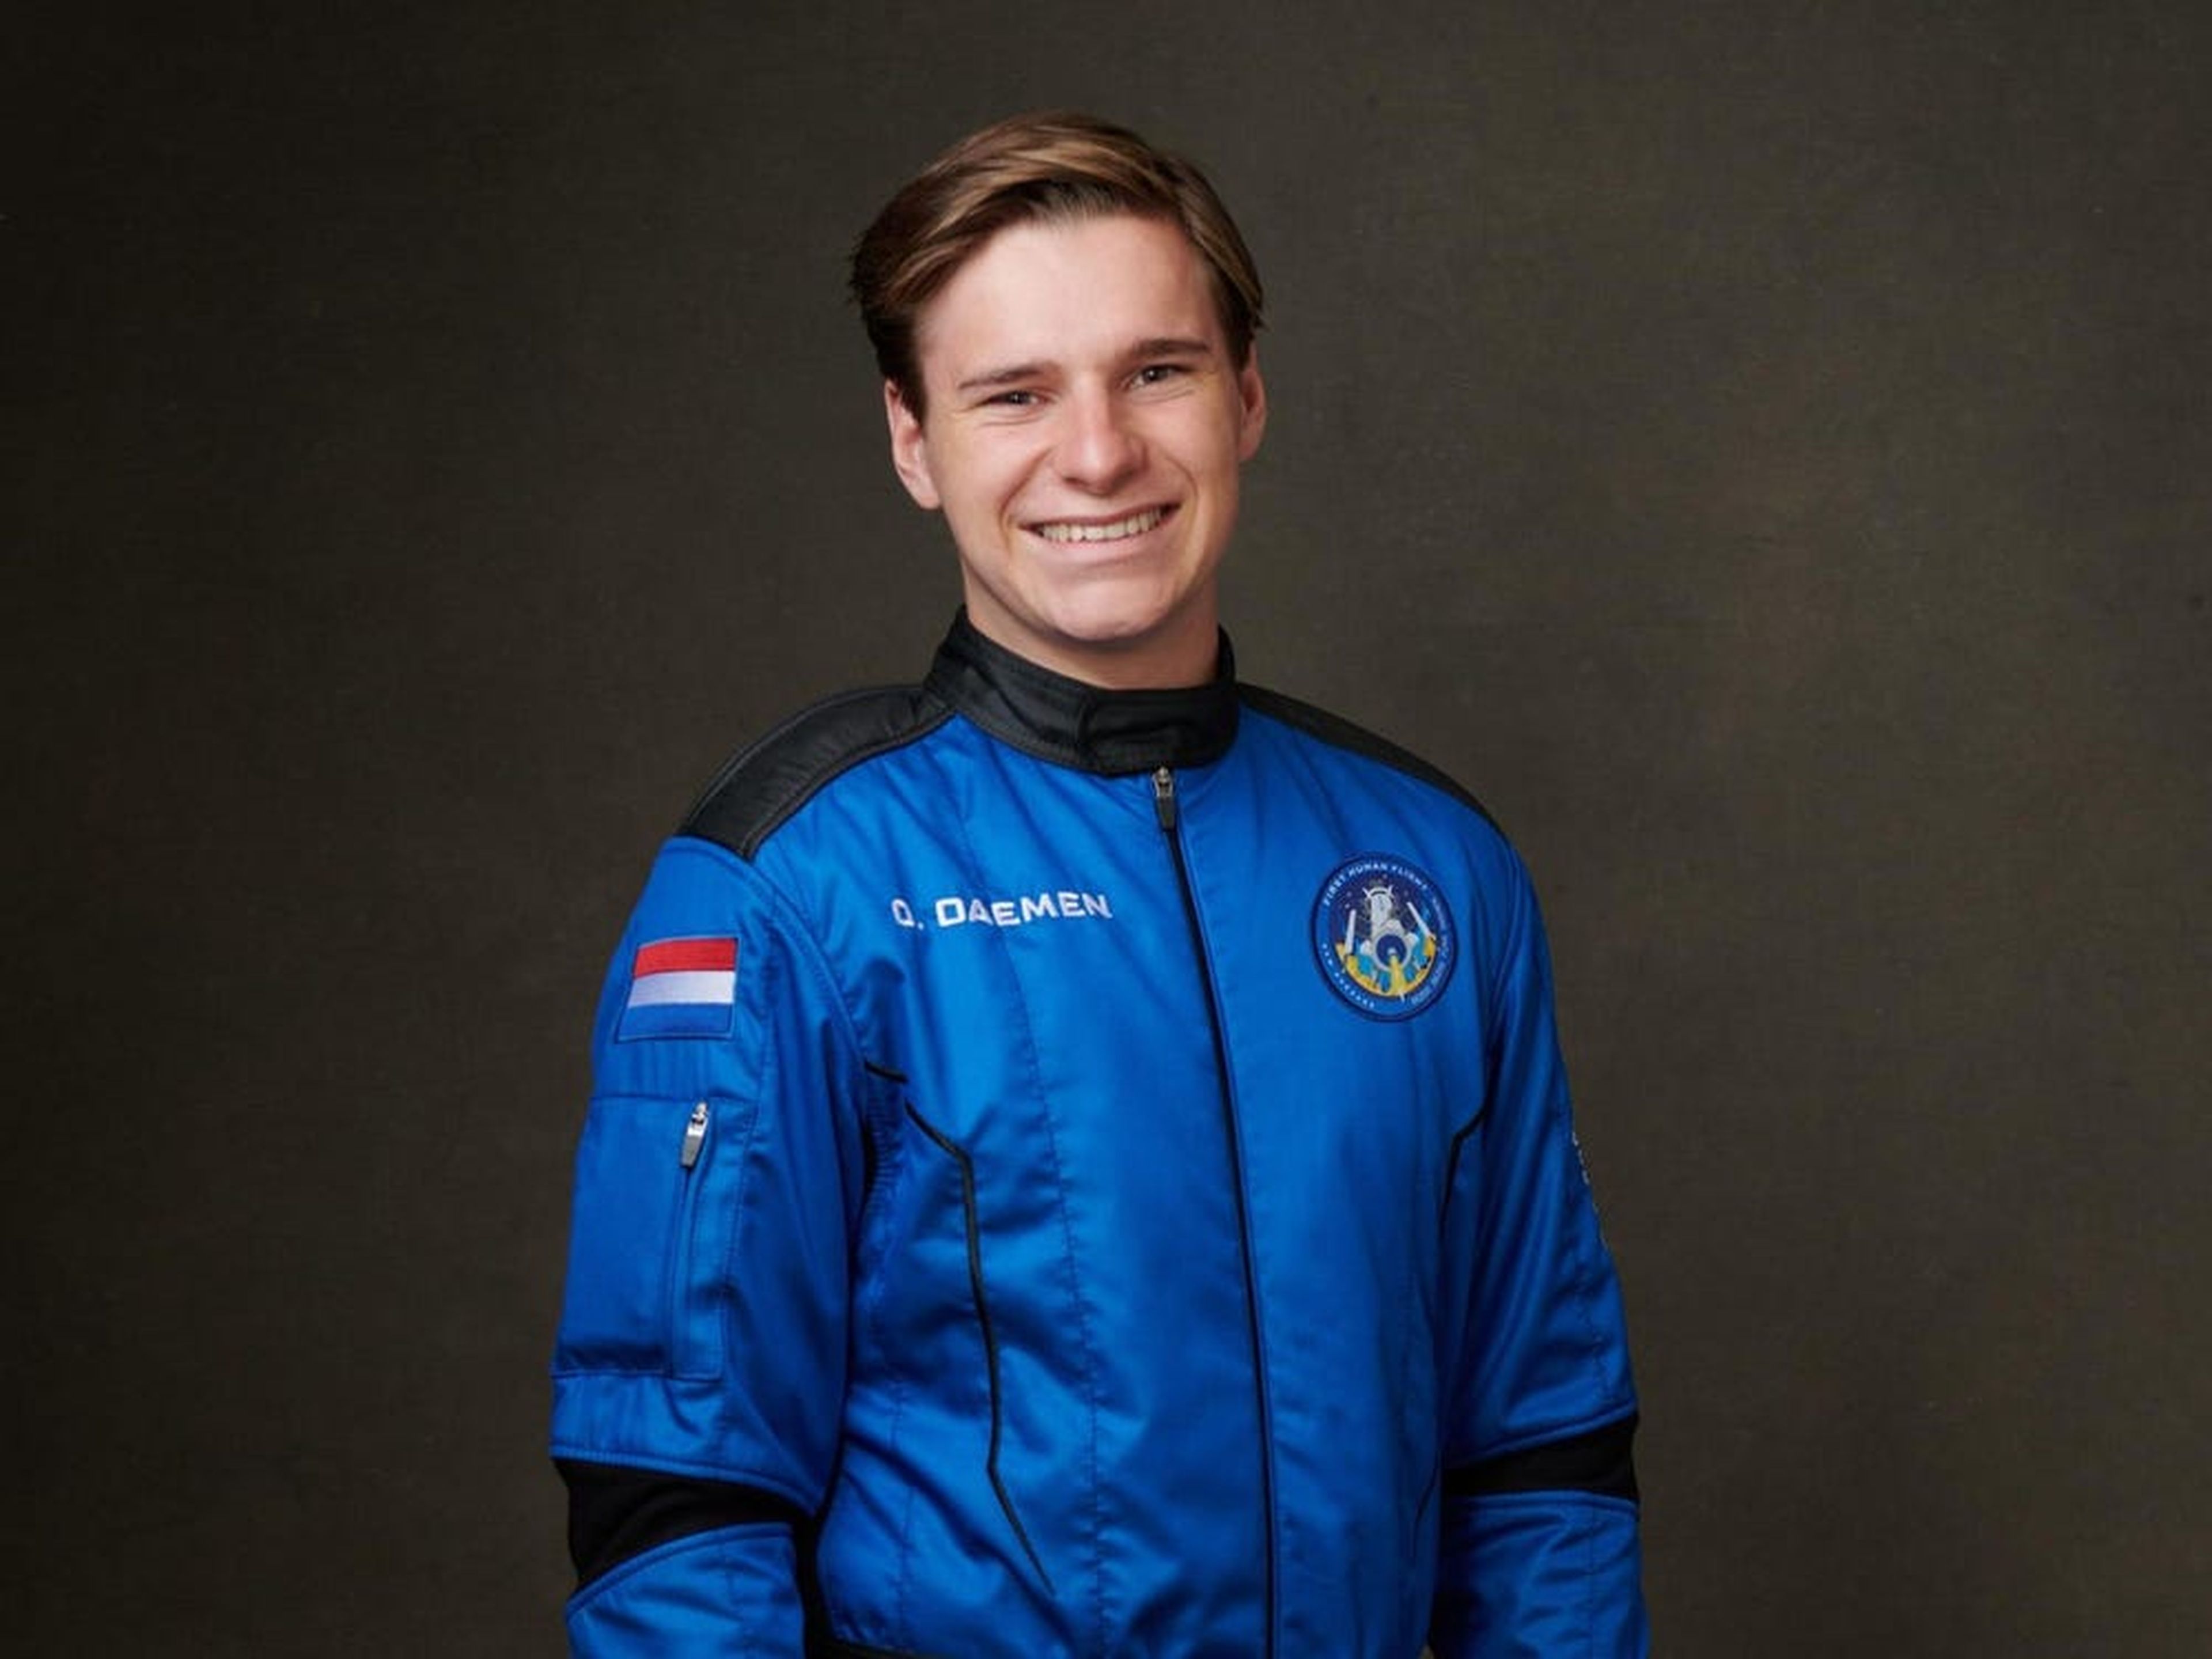 Así es Oliver Daemen, el adolescente holandés que ha acompañado a Jeff Bezos en su vuelo espacial y se ha convertido en la persona más joven en llegar al espacio